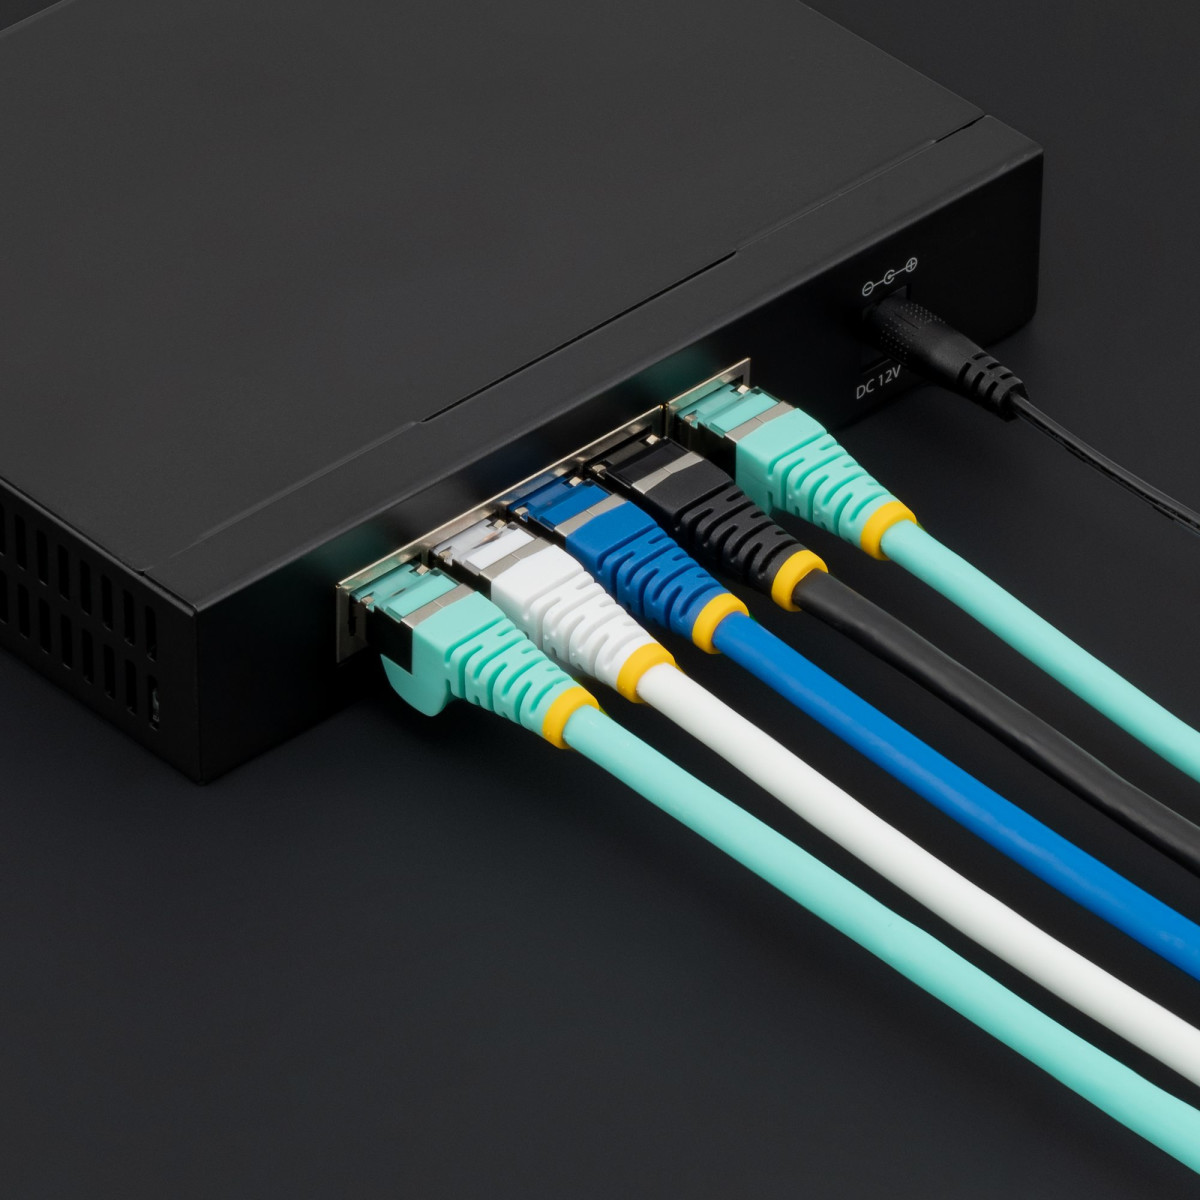 5m LSZH CAT6a Ethernet Cable - Black